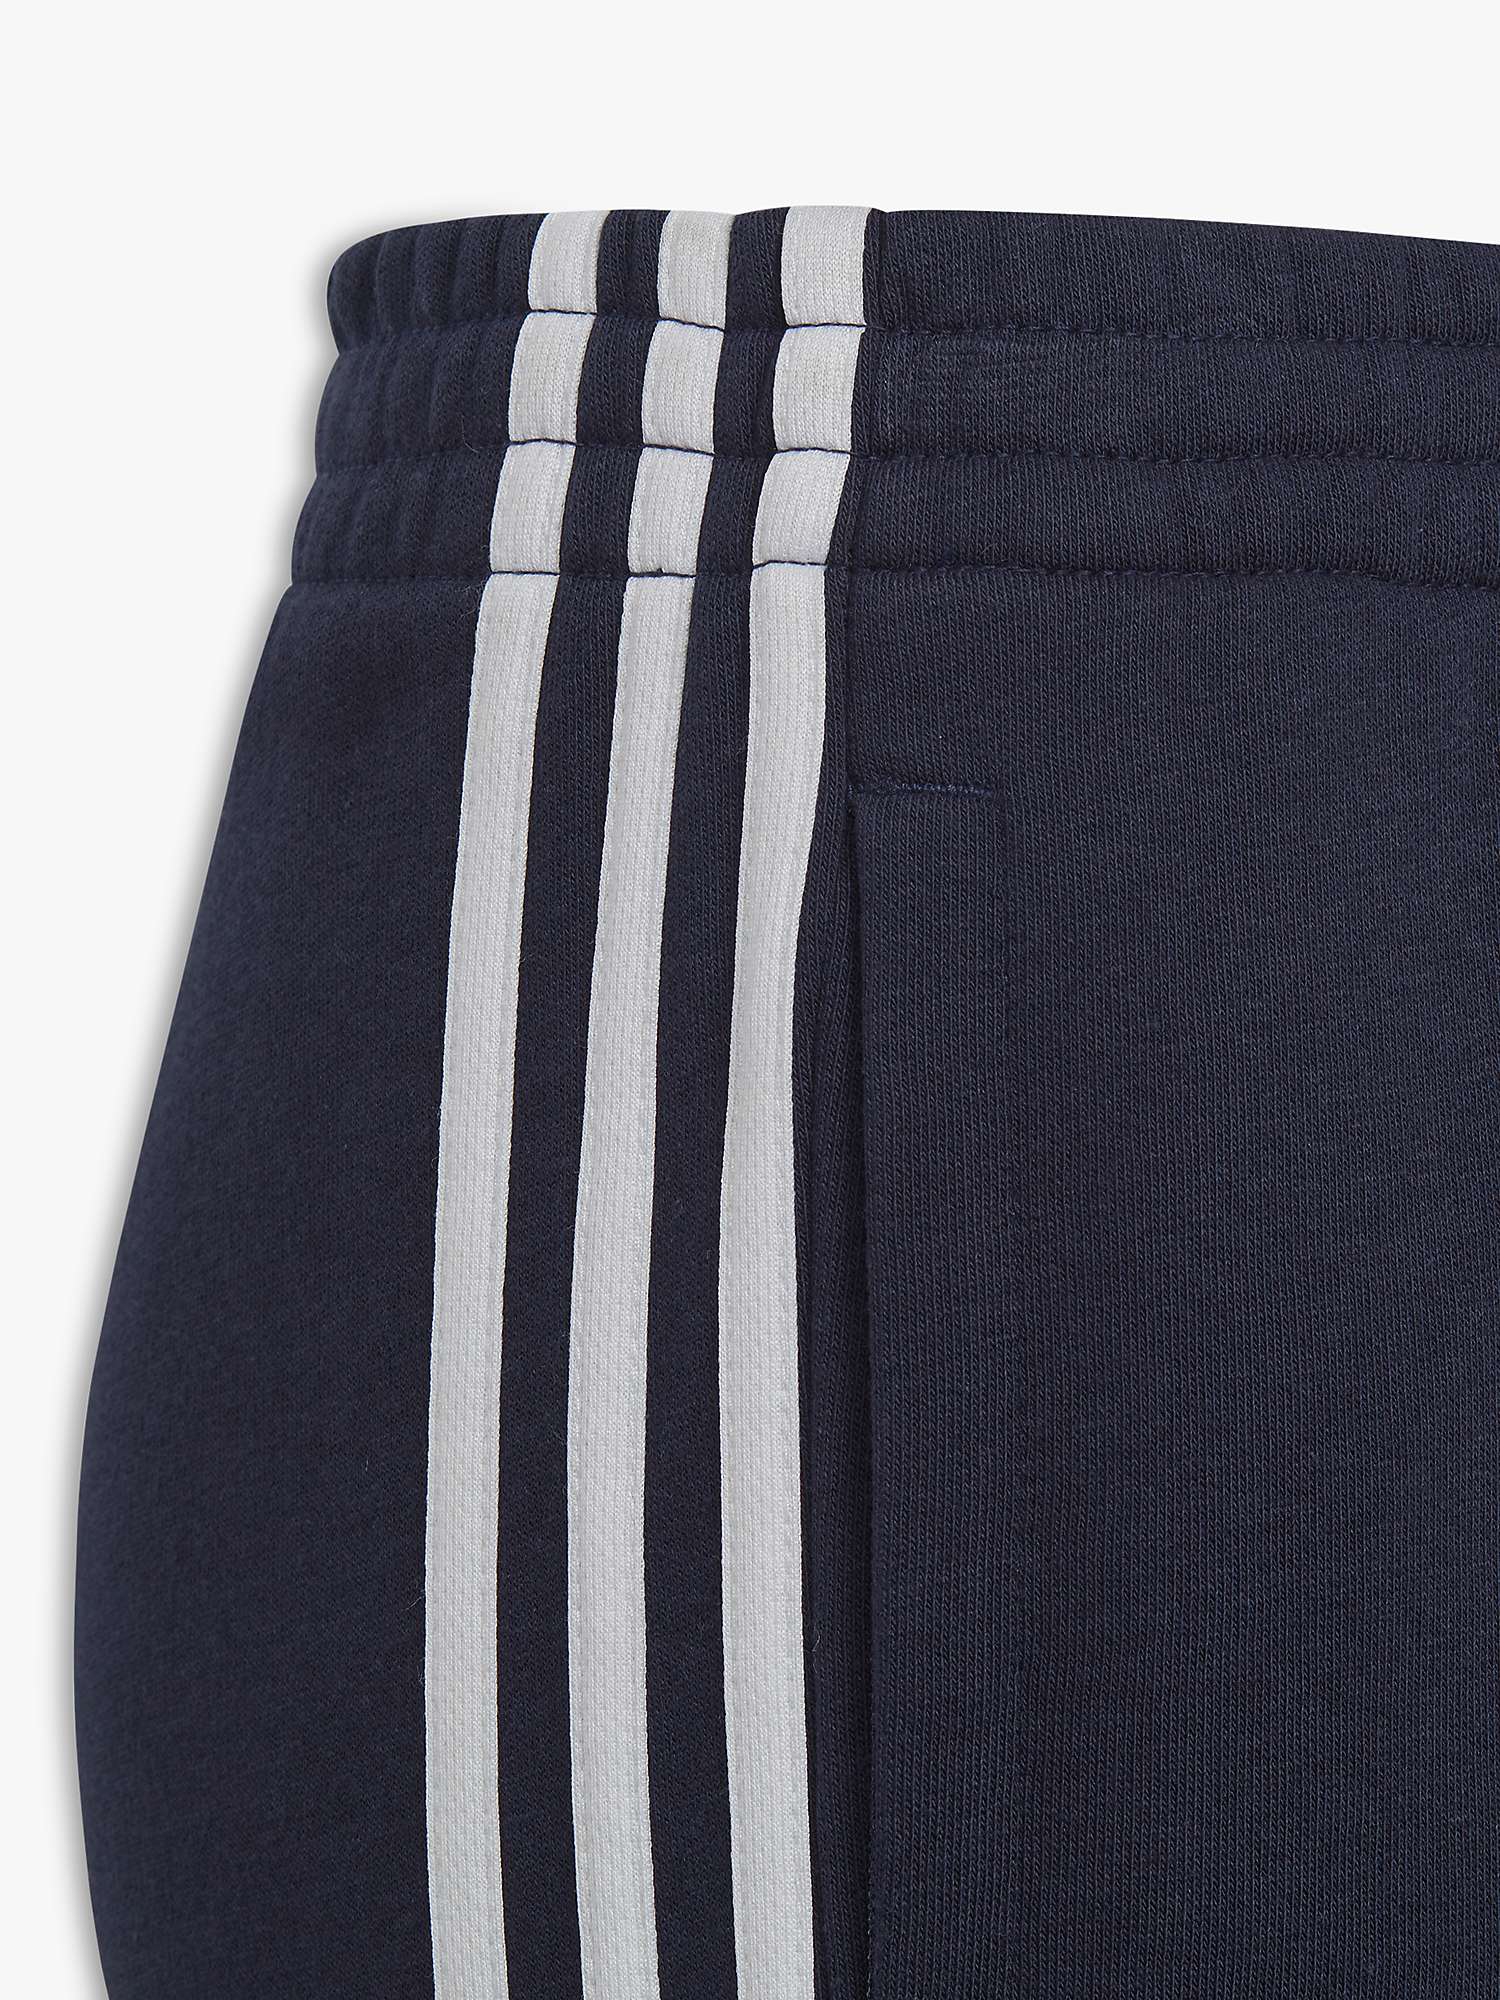 Buy adidas Kids' Fleece Pants, Navy Online at johnlewis.com